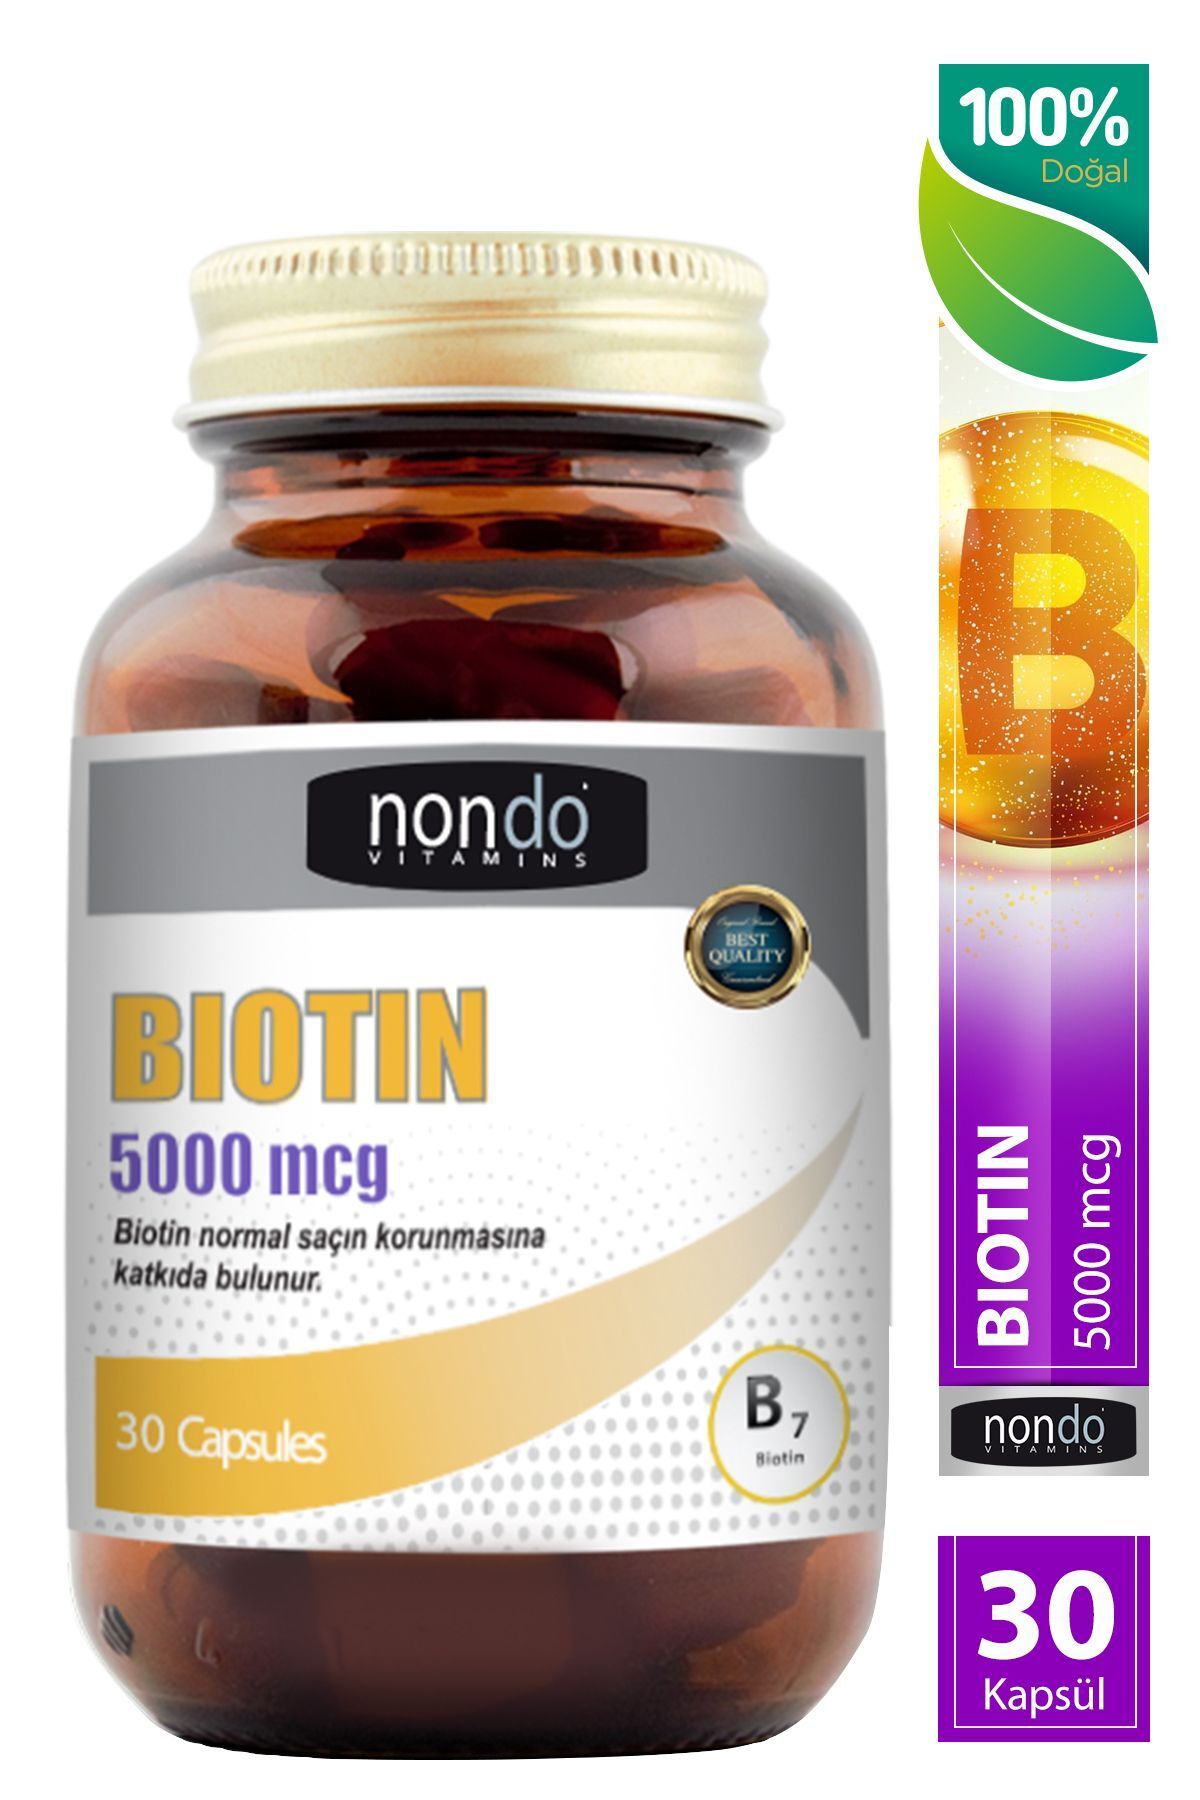 Nondo Biotin 5000 mcg 30 Kapsül